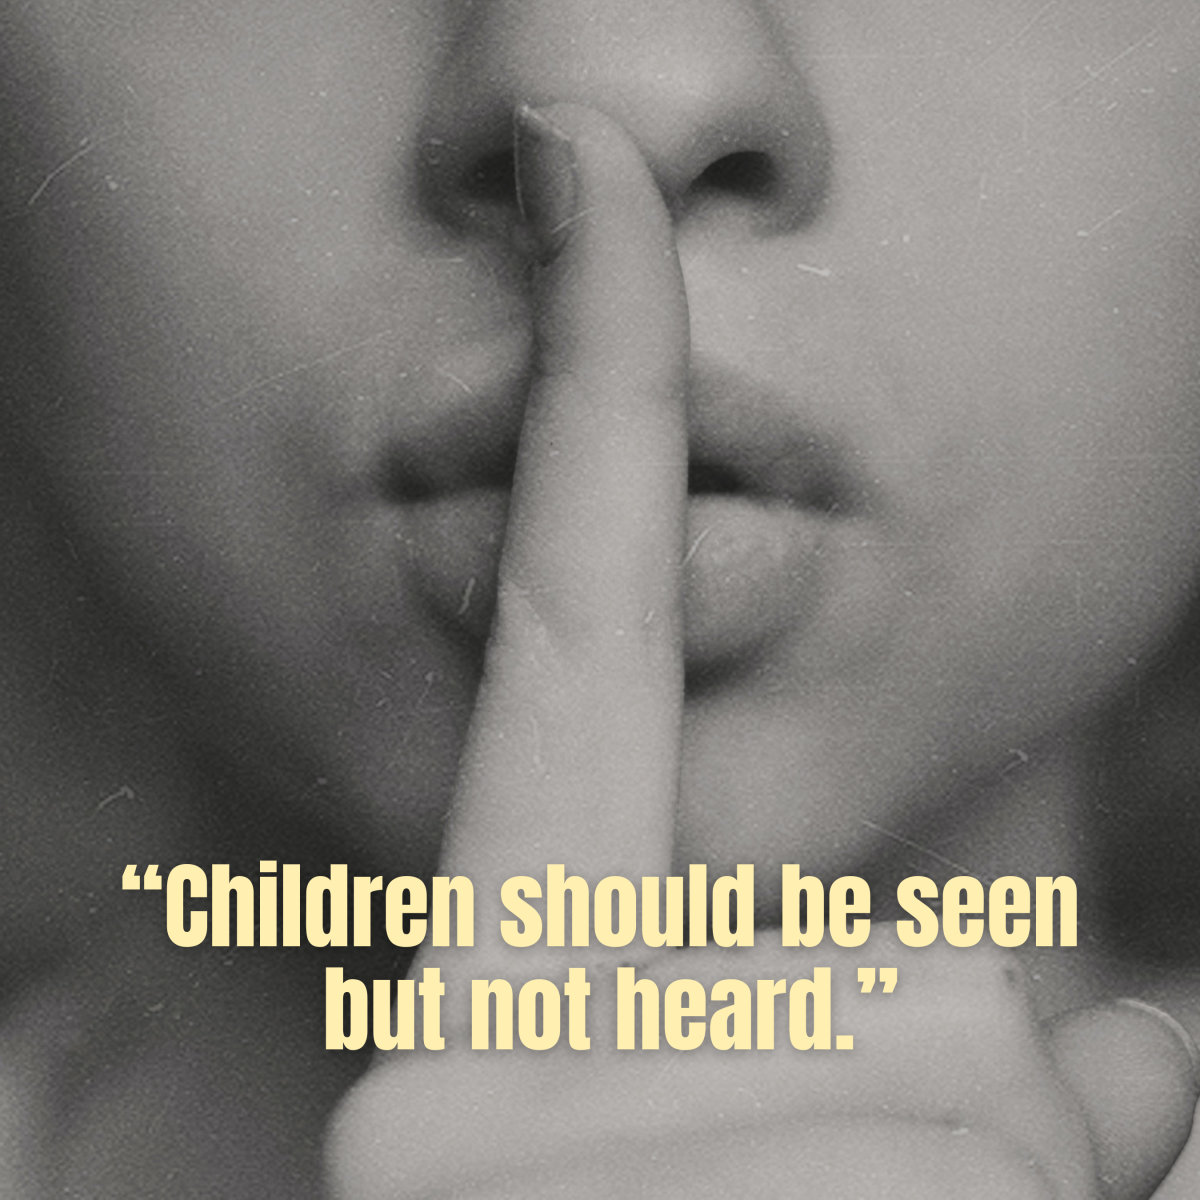 An authoritarian parent believes that children should be seen but not heard.